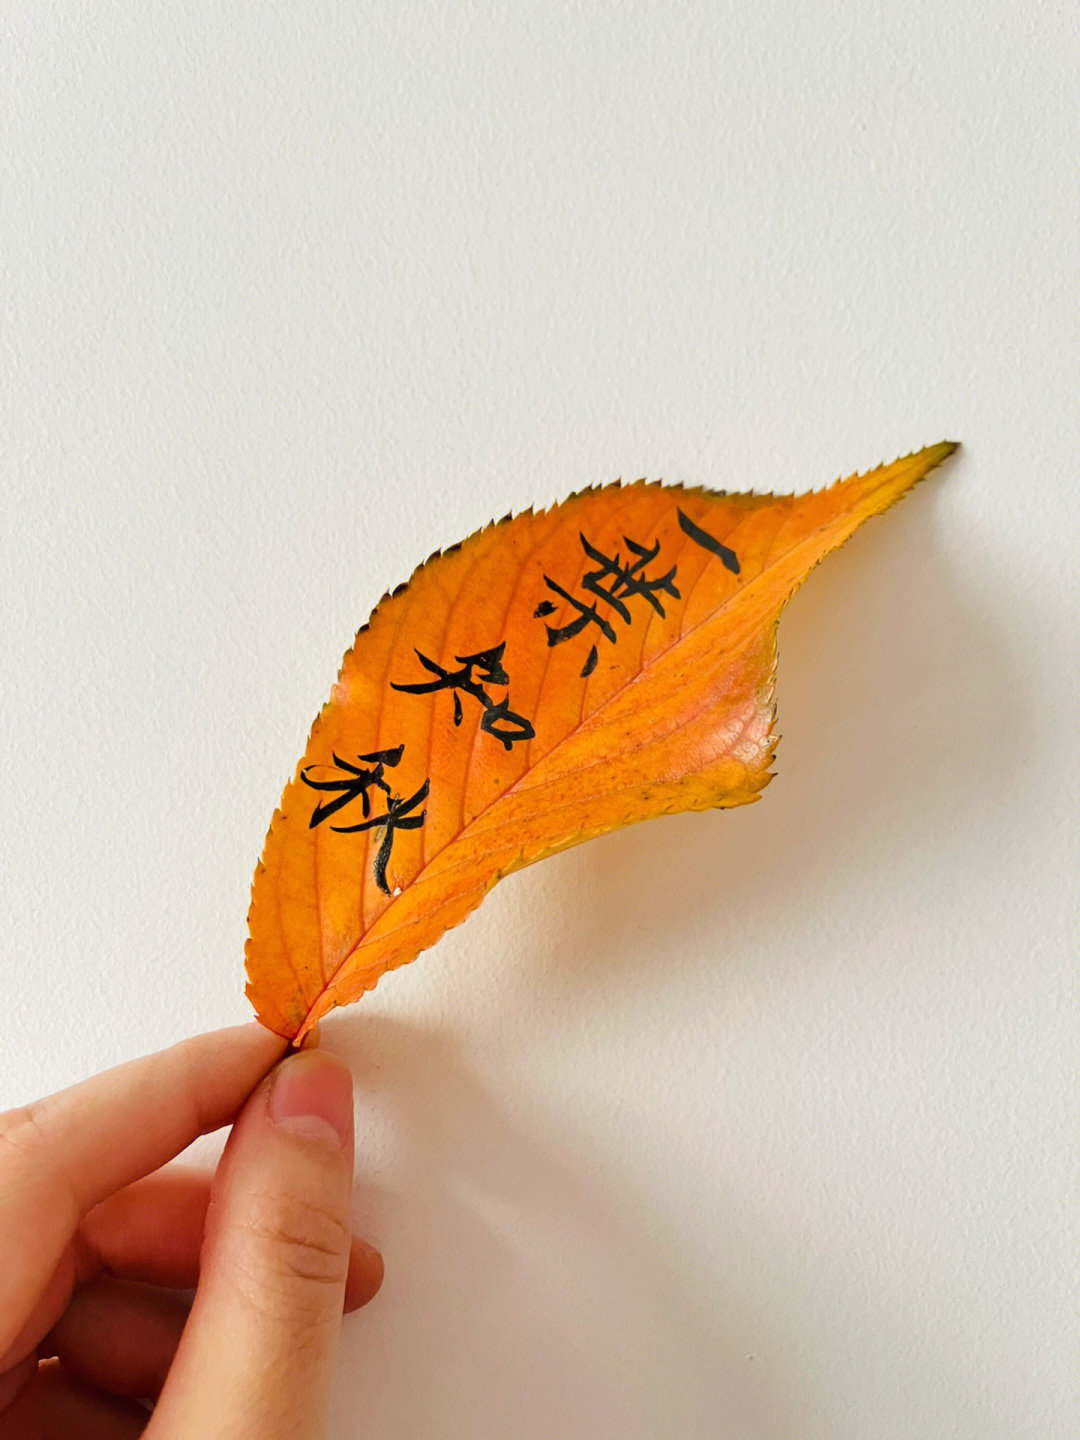 小区里捡了几片树叶,只可惜没有银杏叶毛笔在树叶上比想象中的好写,看